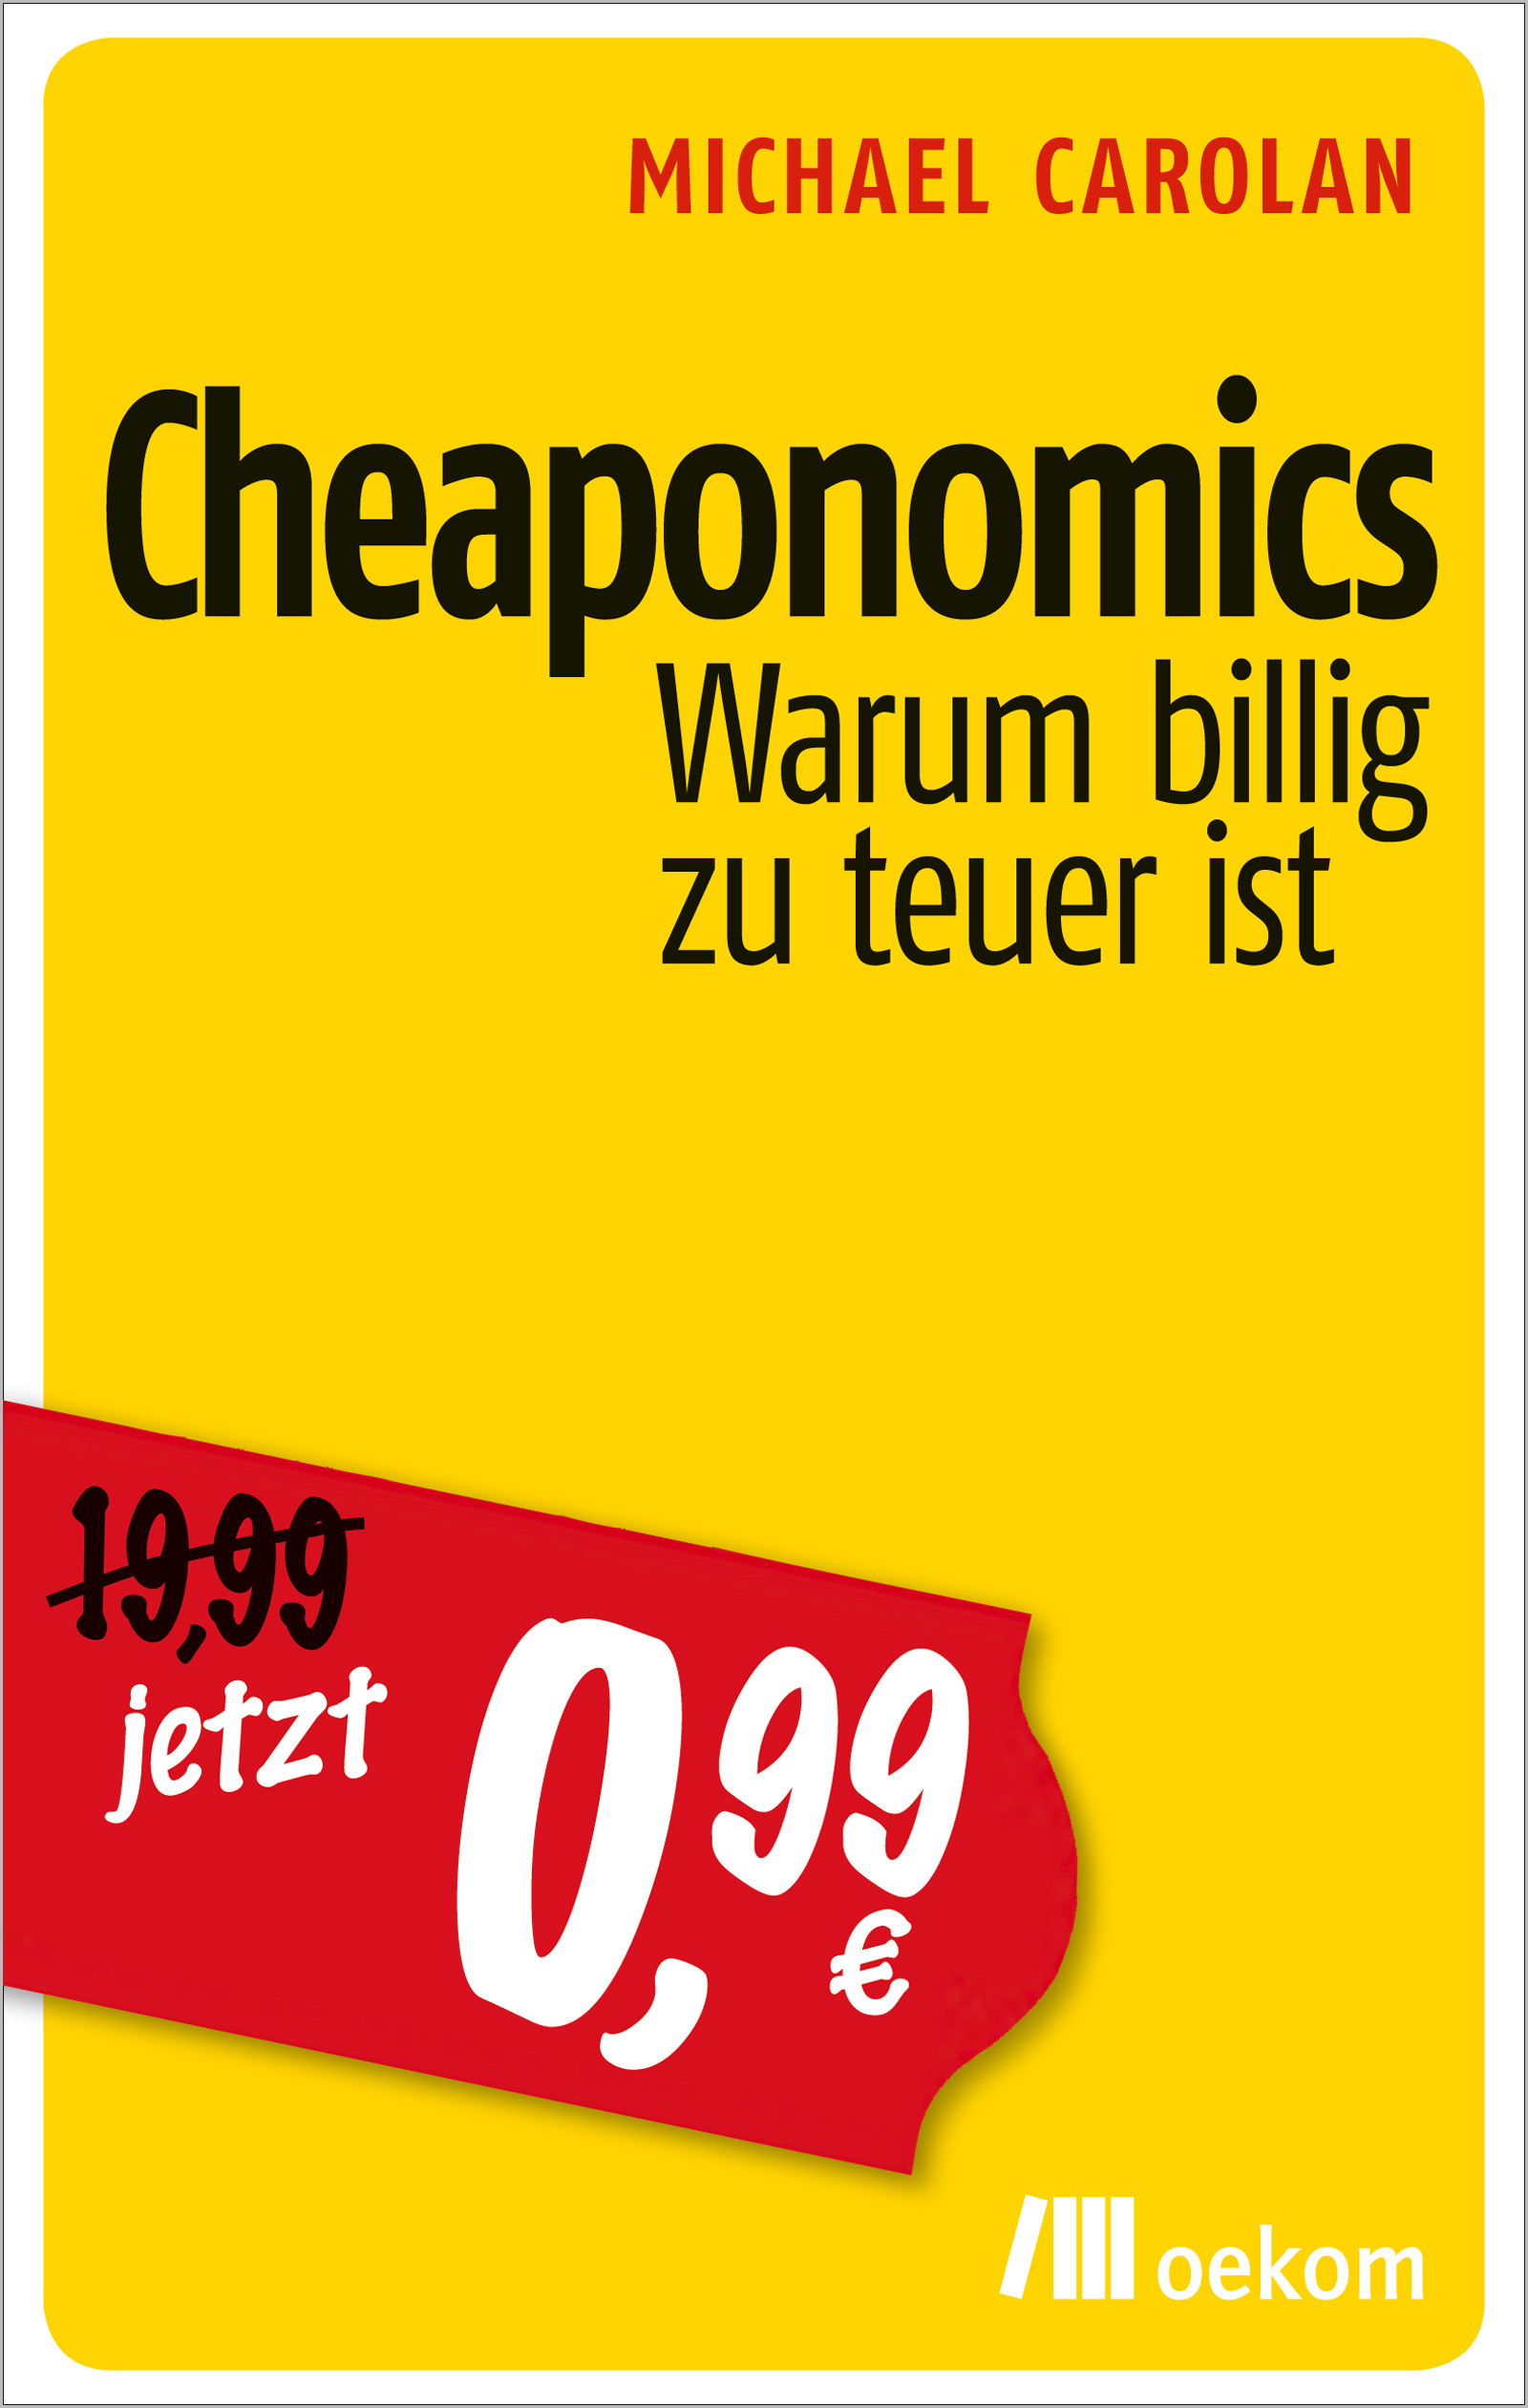 Cheaponomics - Warum billig zu teuer ist